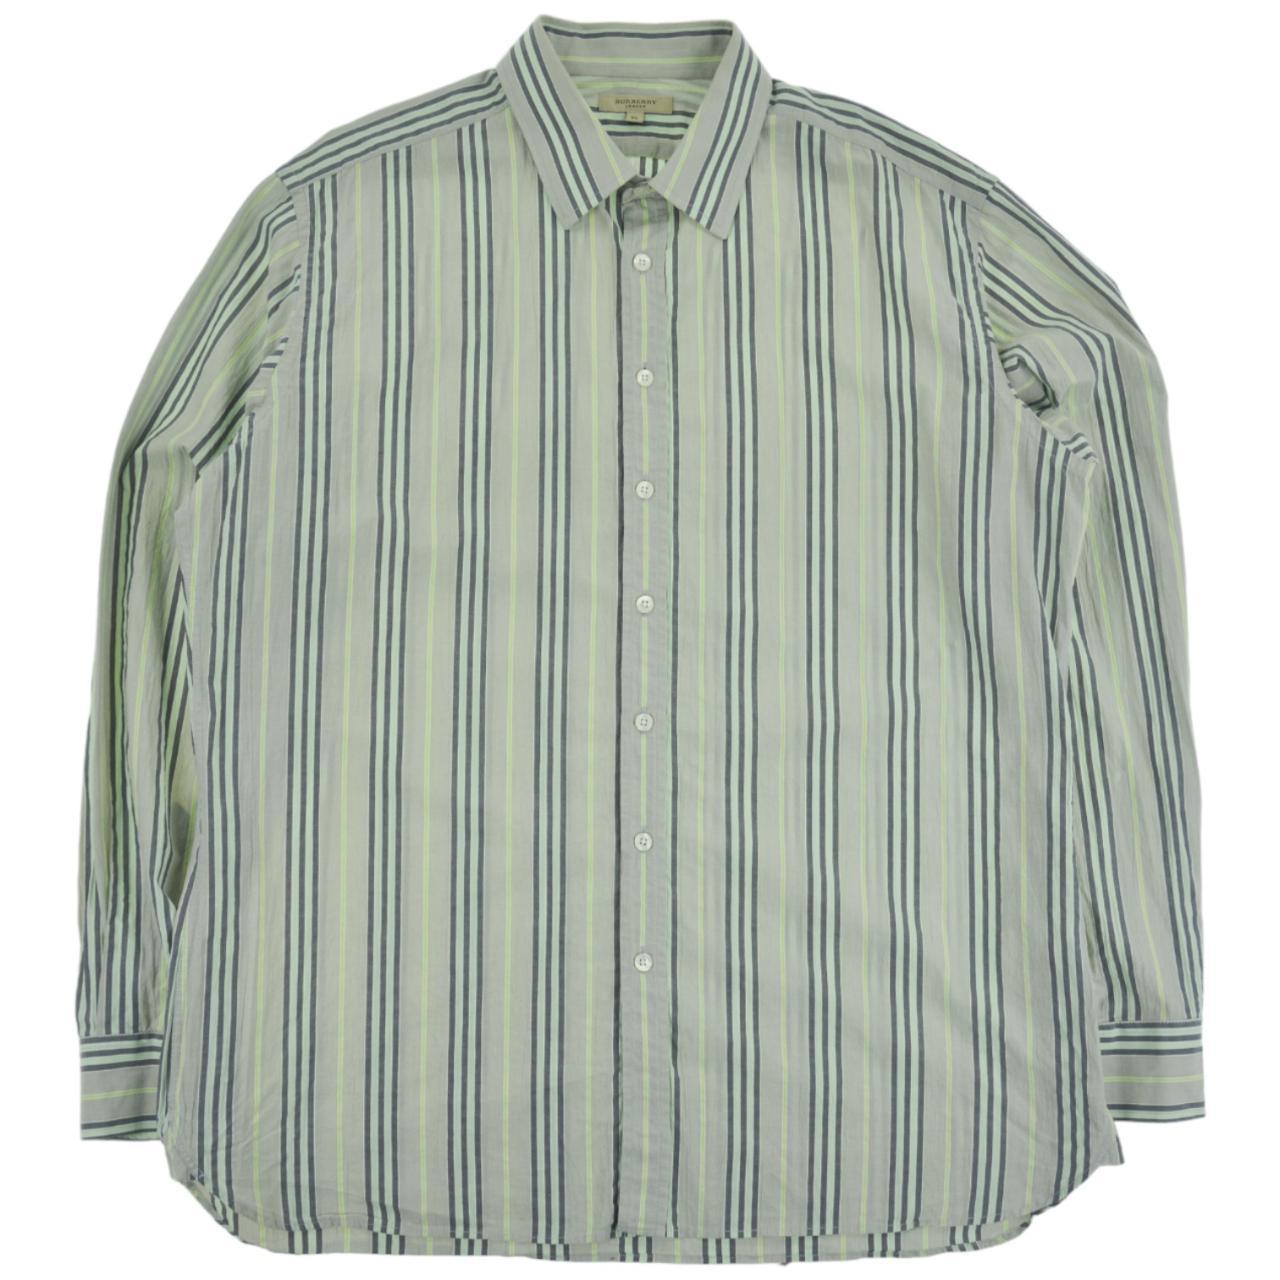 Vintage Burberry Nova Stripe Shirt Size XL - Known Source